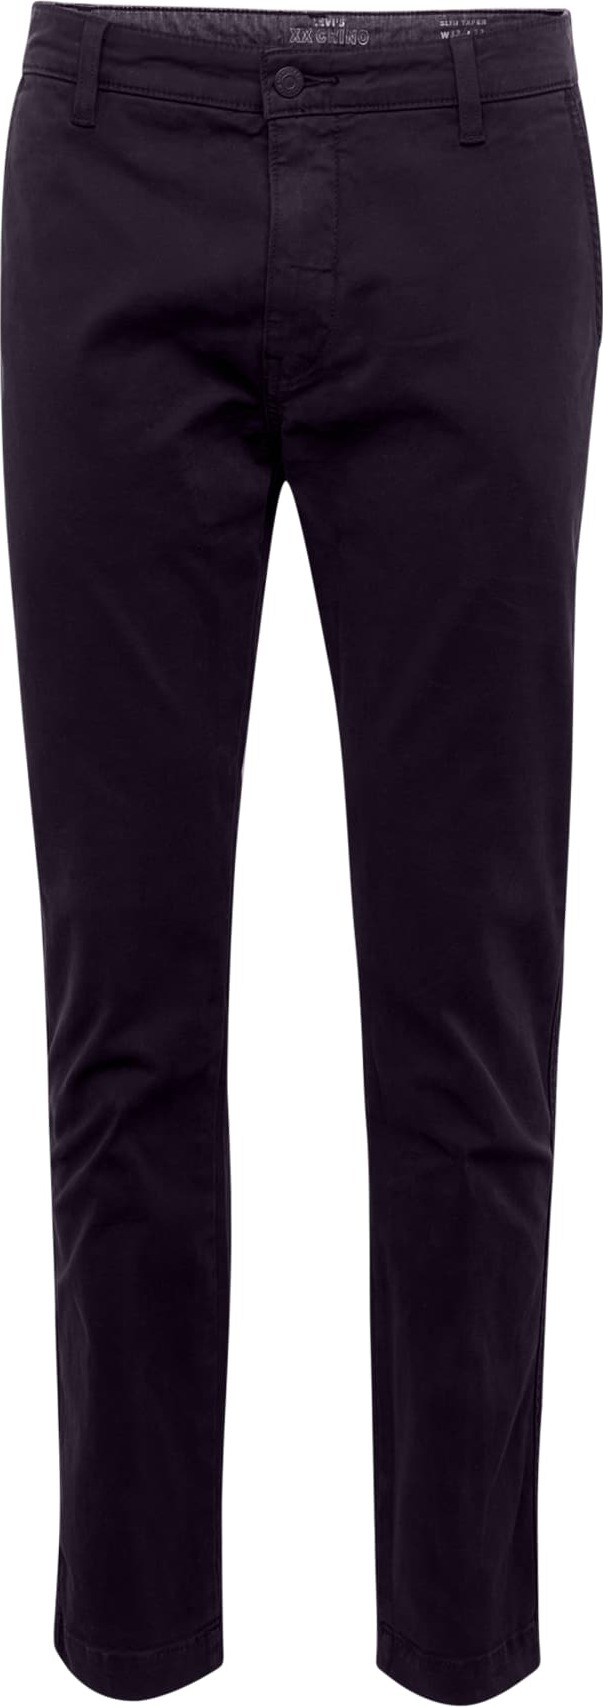 LEVI'S Chino kalhoty 'STANDARDTAPERCHINOII' černá